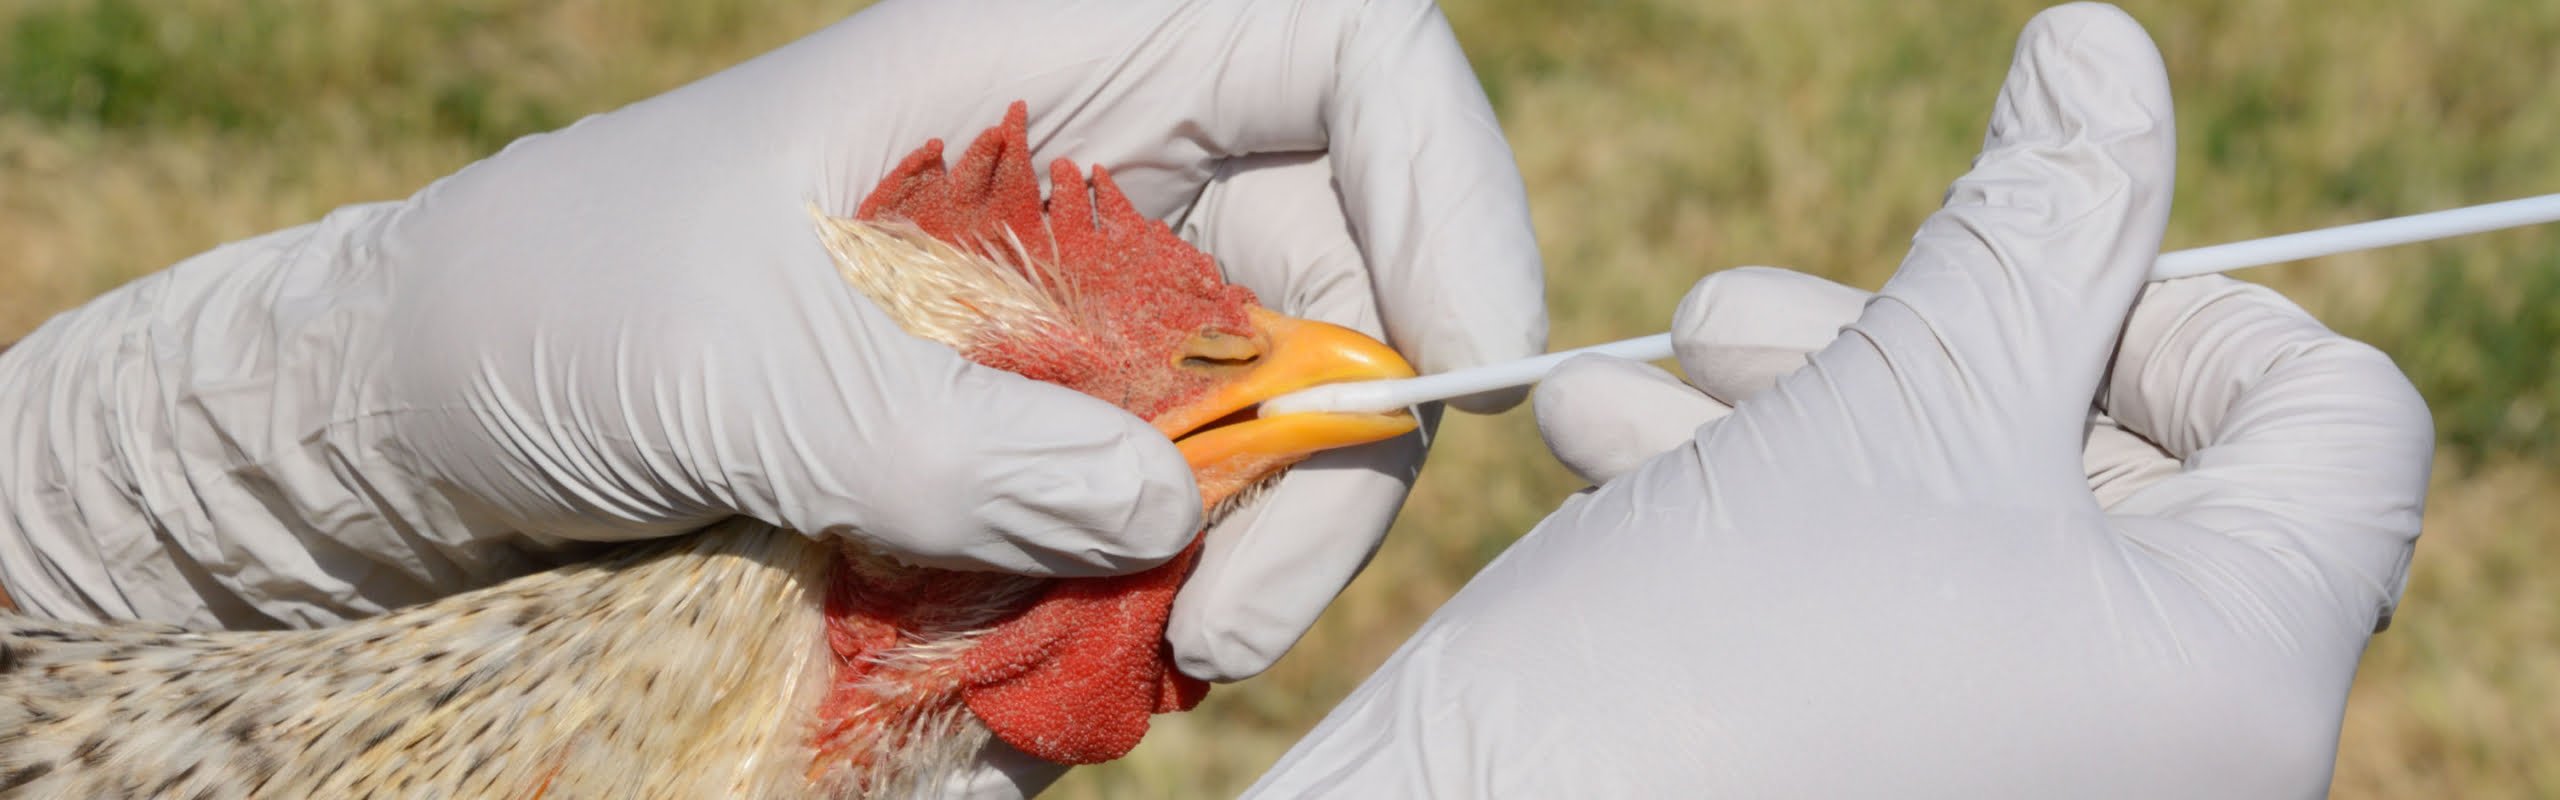 பறவைக் காய்ச்சலை mcm avian influenza rooster hero 2880x900 1 scaled